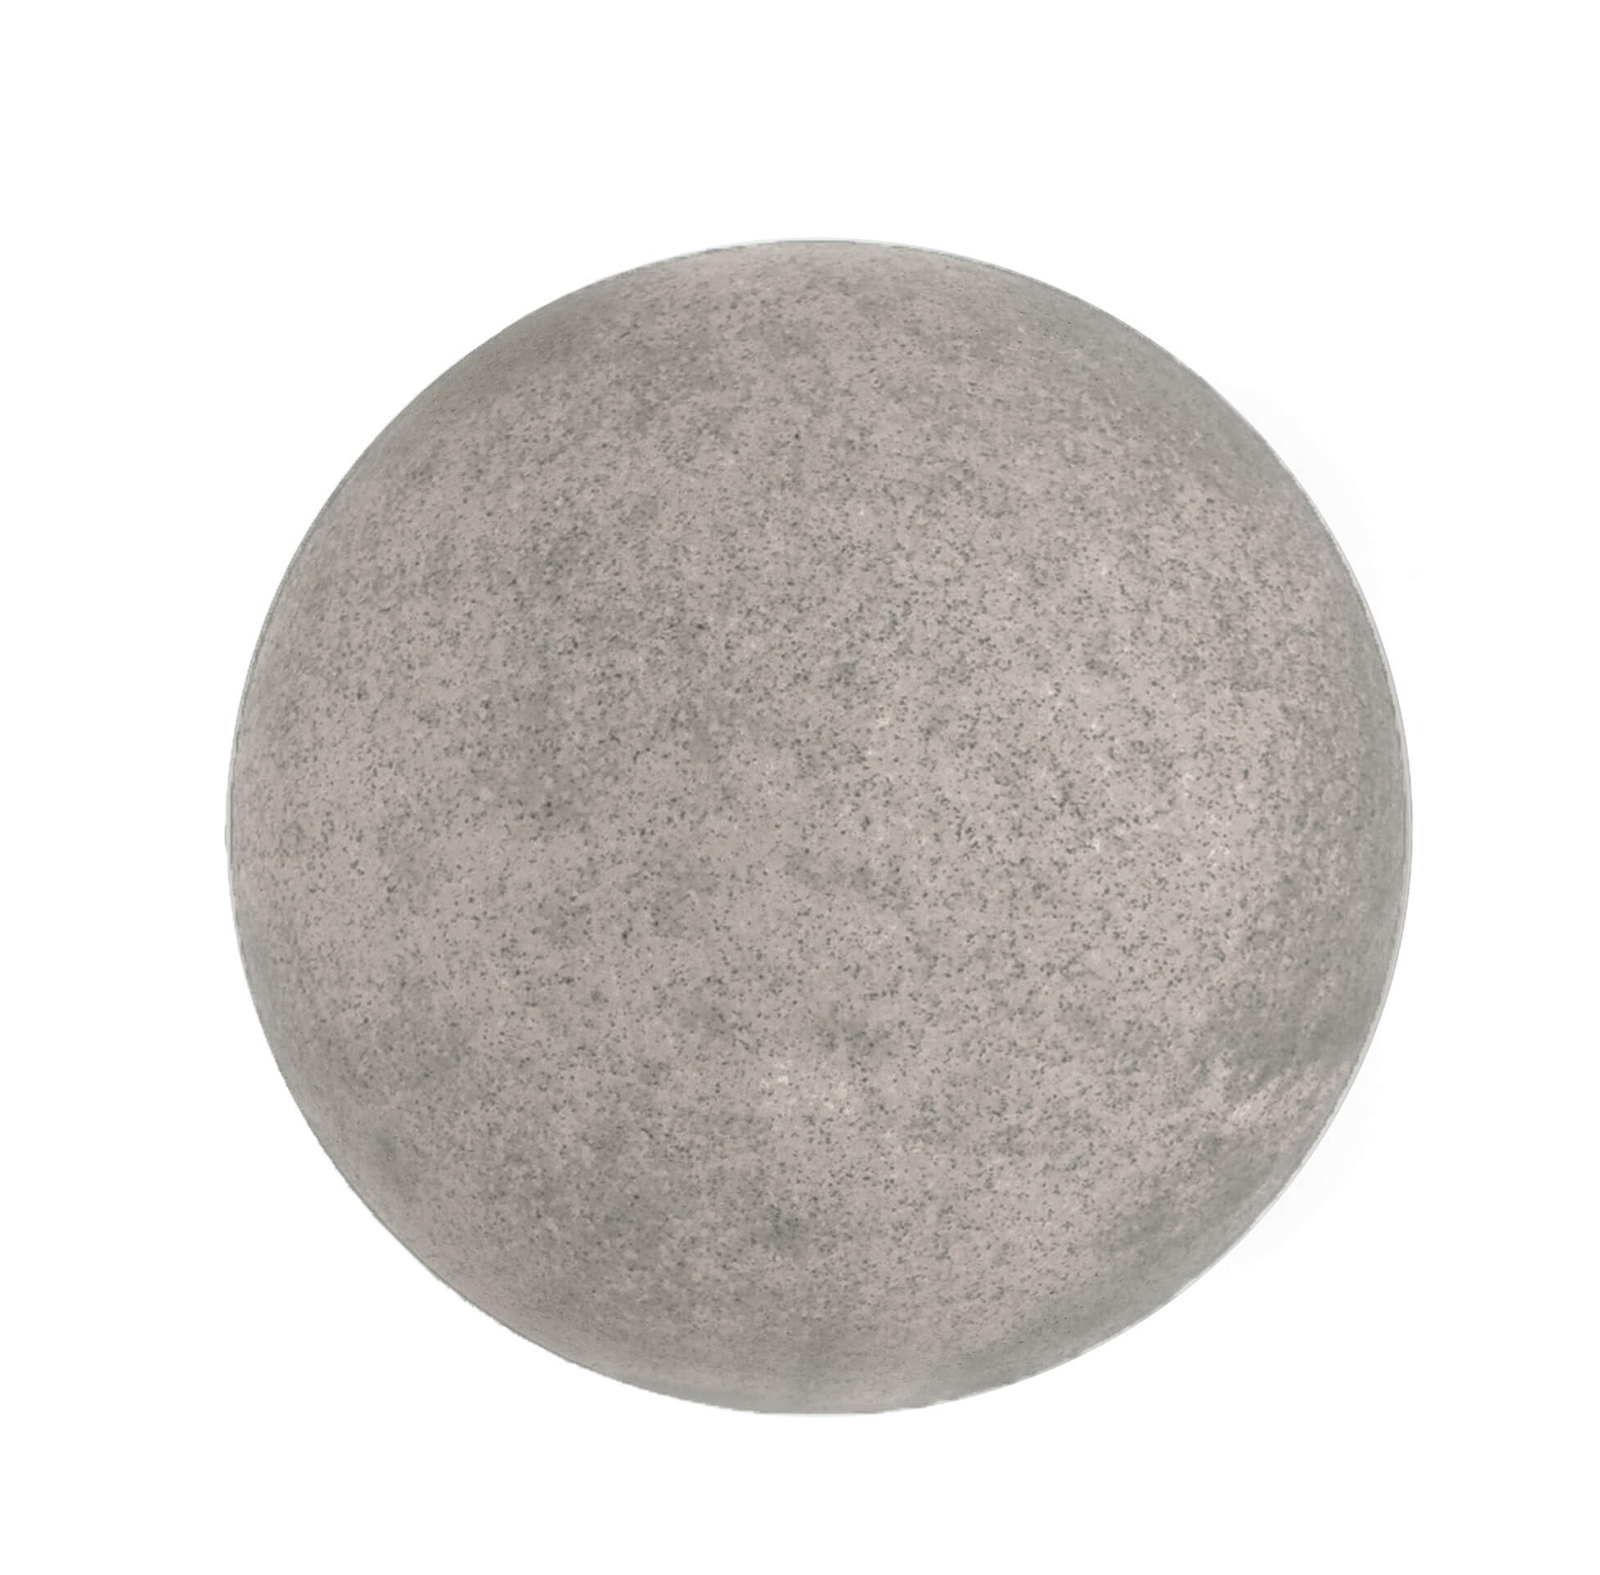 Lampada a globo per esterni con picchetto a terra, granito, Ø 25 cm